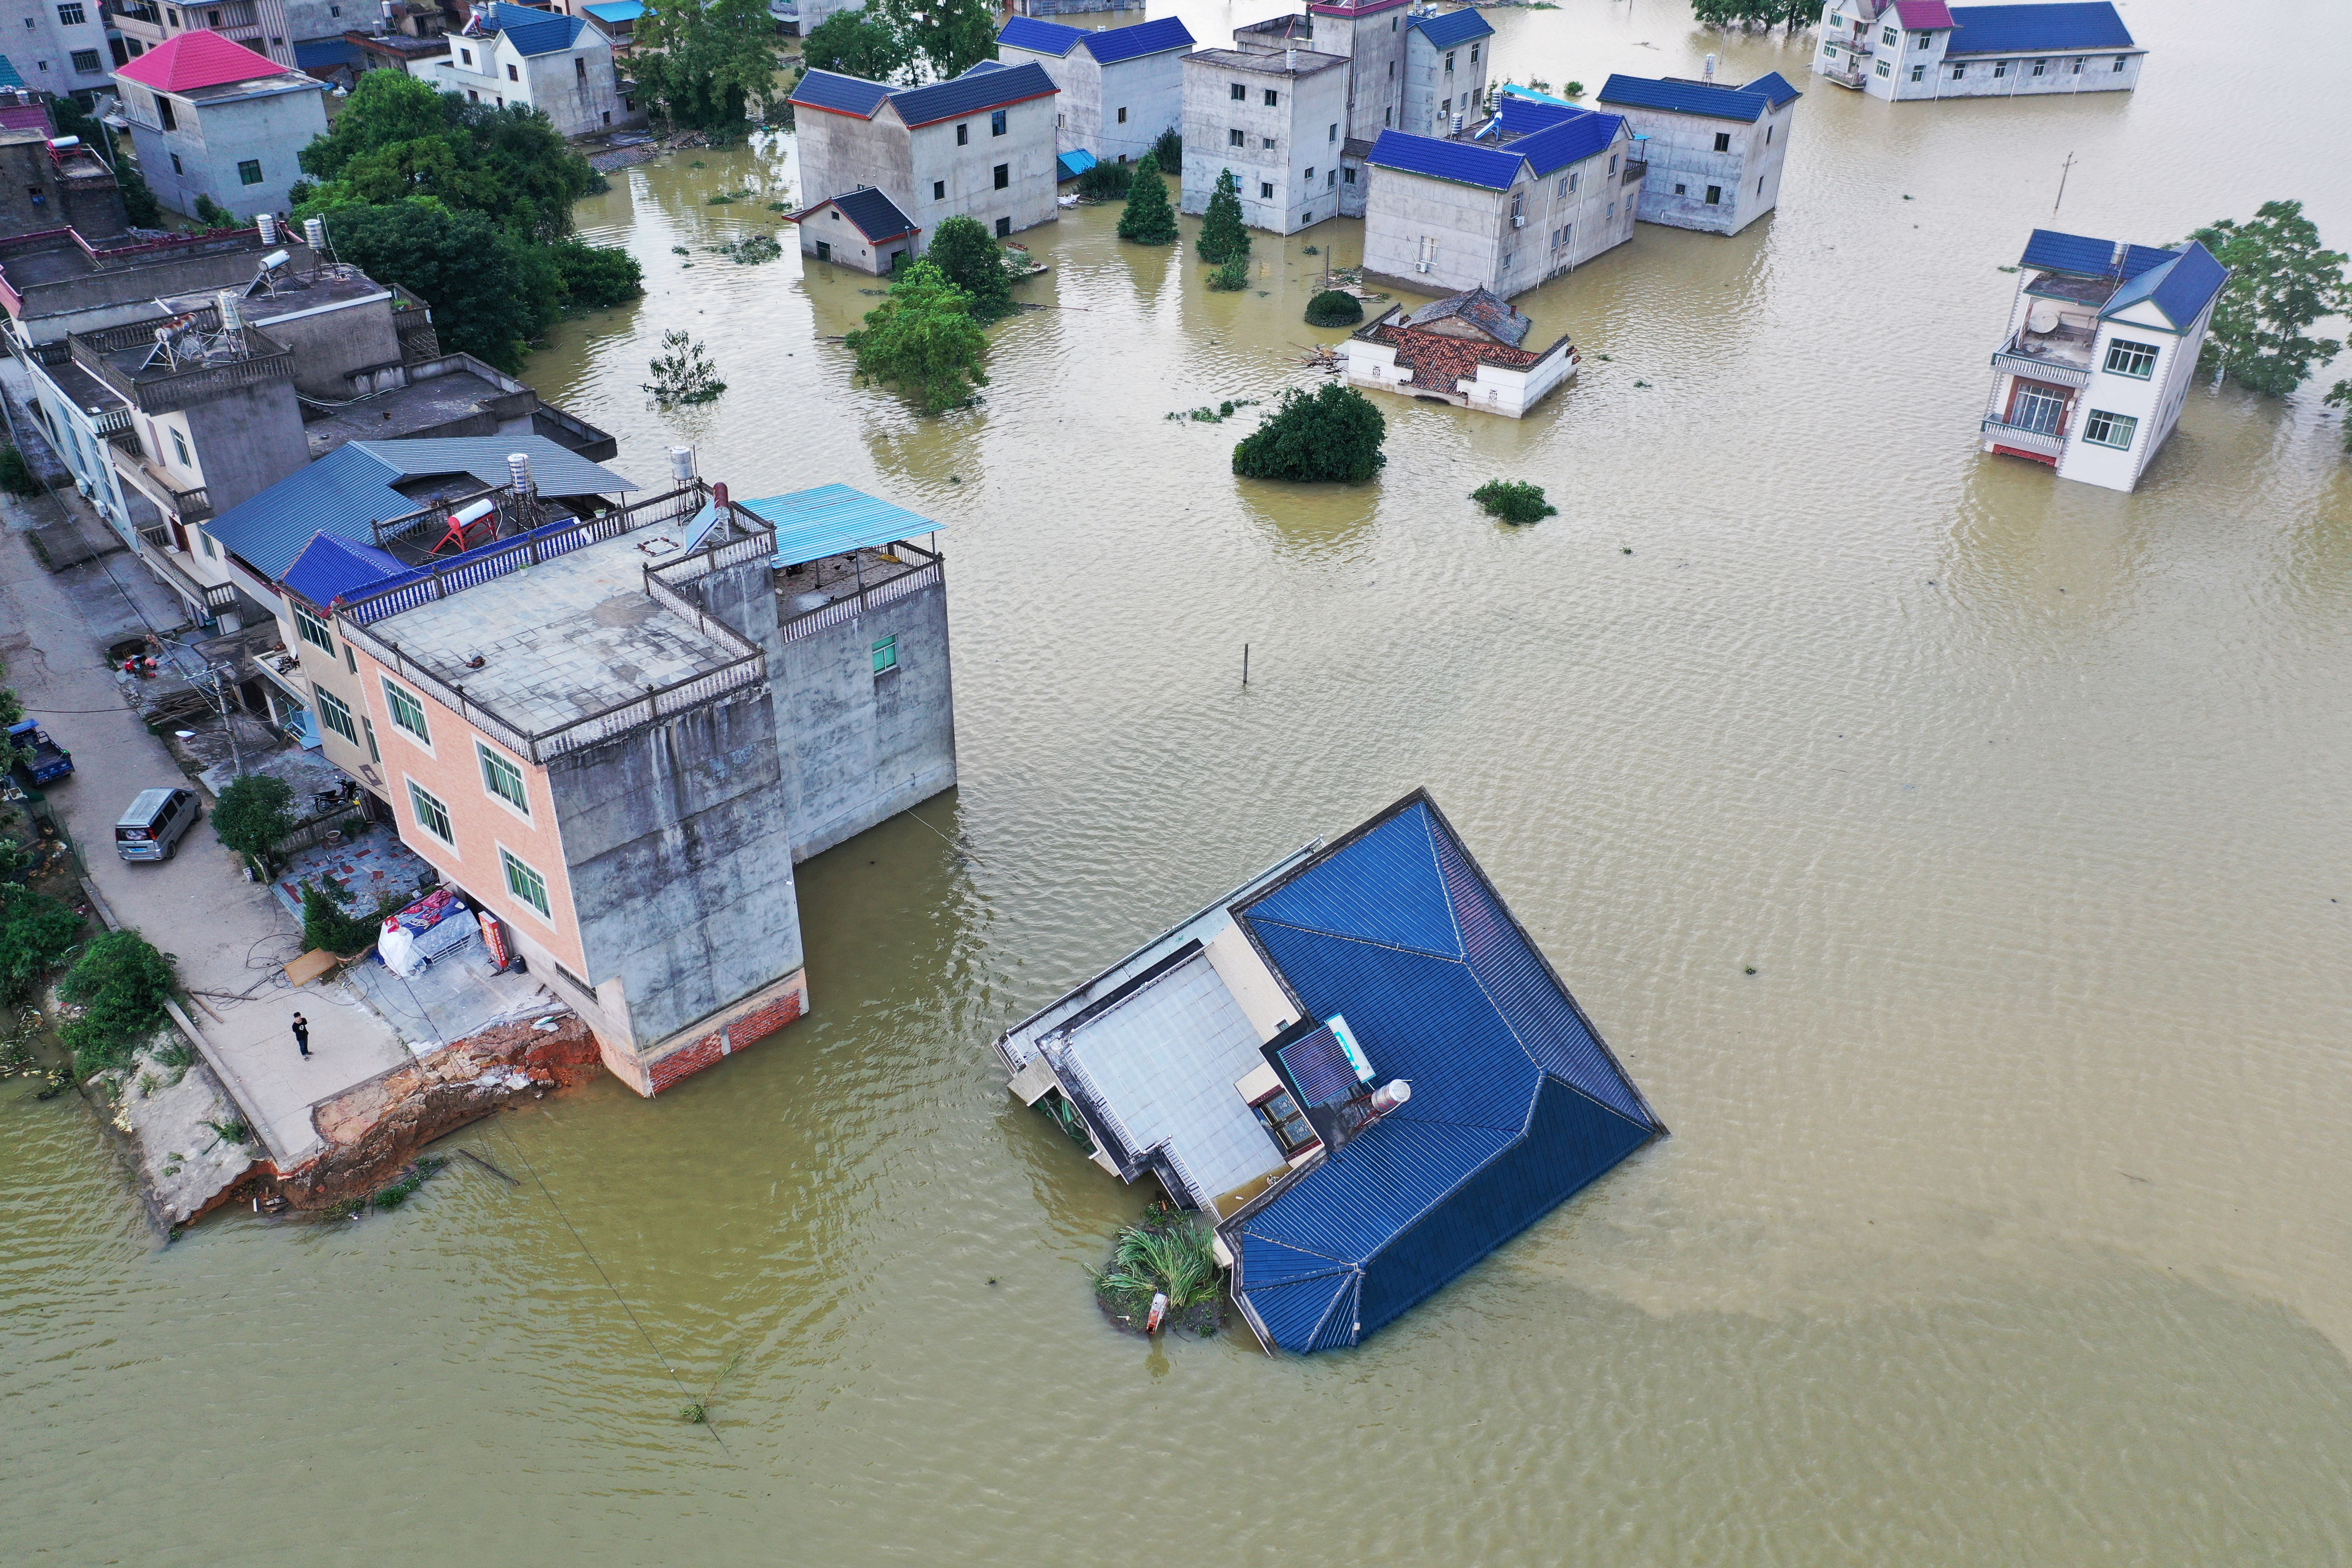 Trung Quốc 'gồng mình' ngăn lũ, nhiều nước láng giềng châu Á chịu chung cảnh ngập lụt